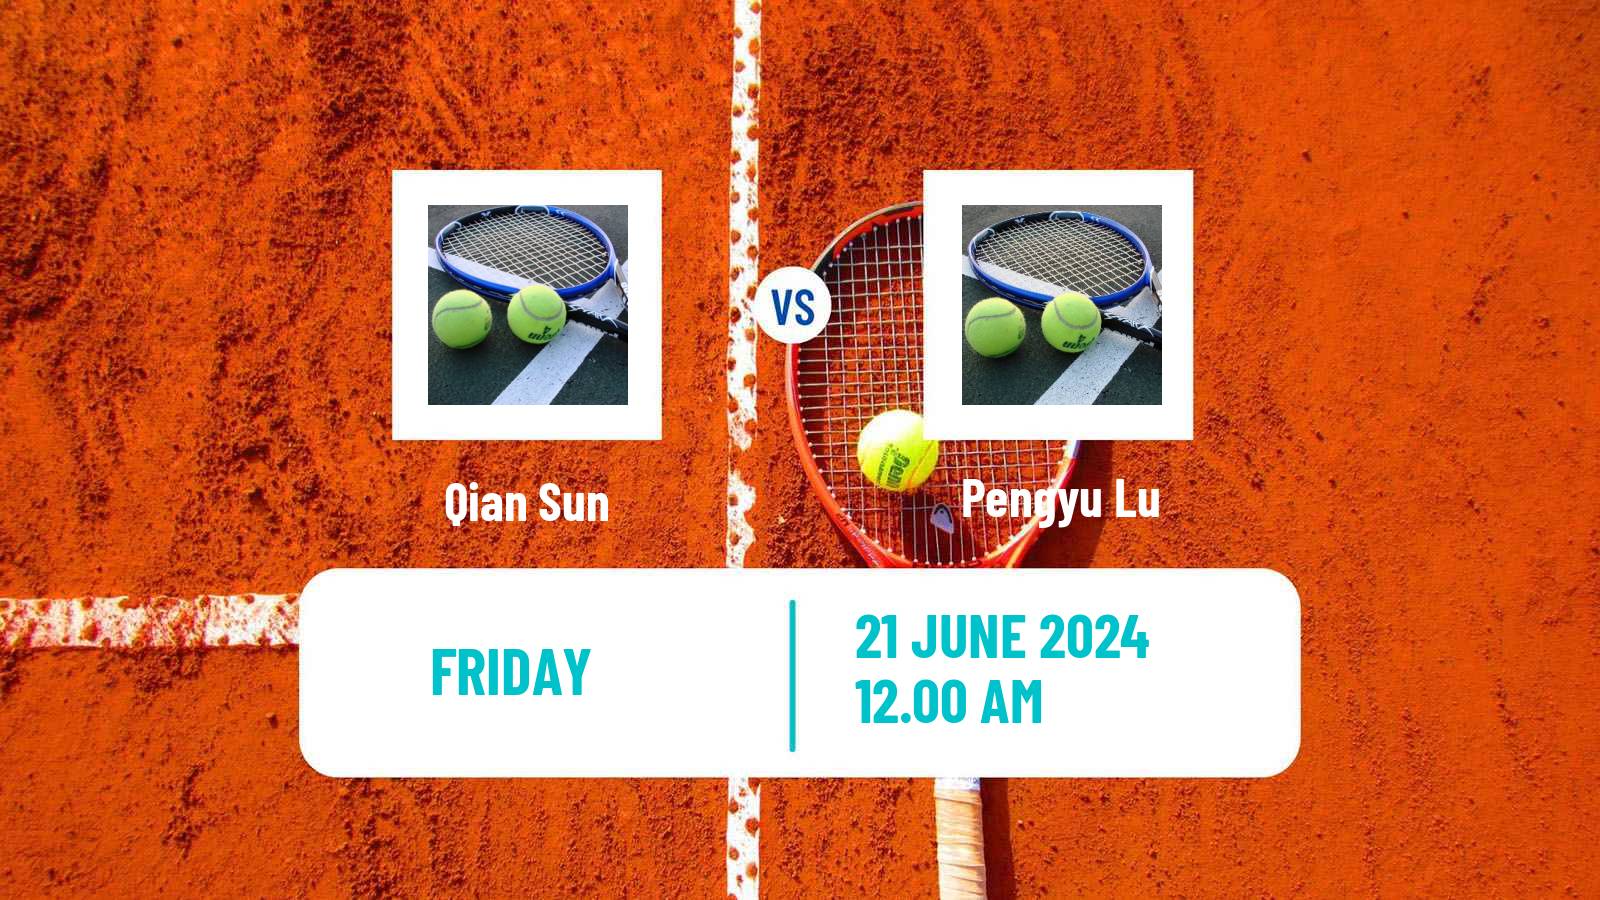 Tennis ITF M25 Luzhou Men Qian Sun - Pengyu Lu